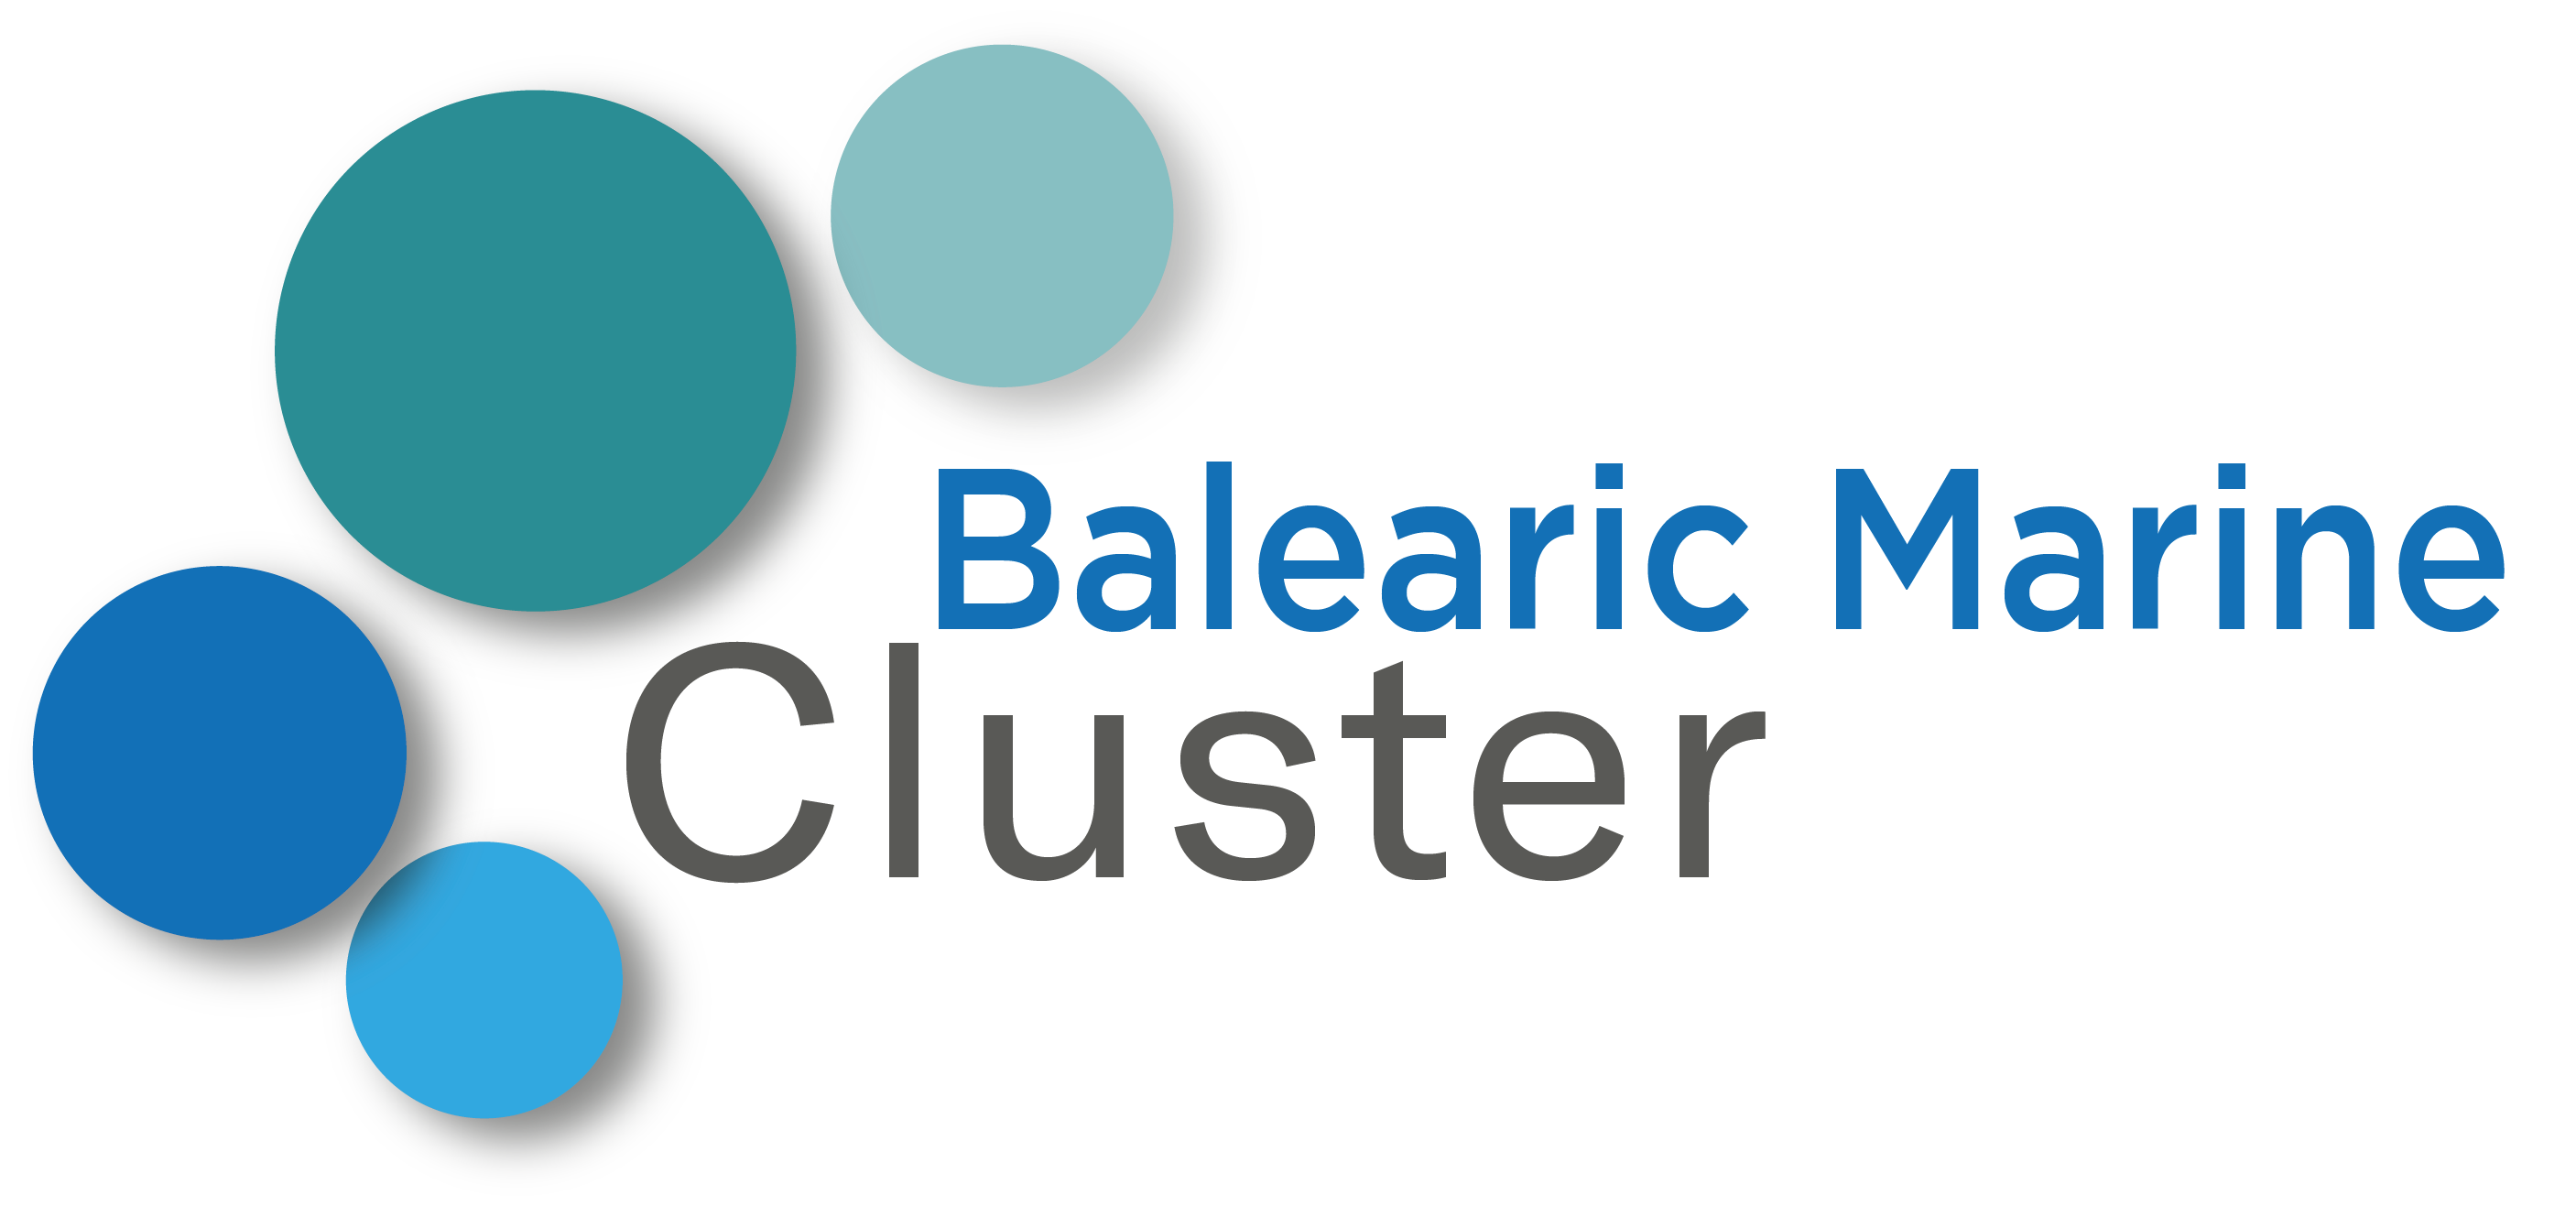 Balearic Marine Cluster